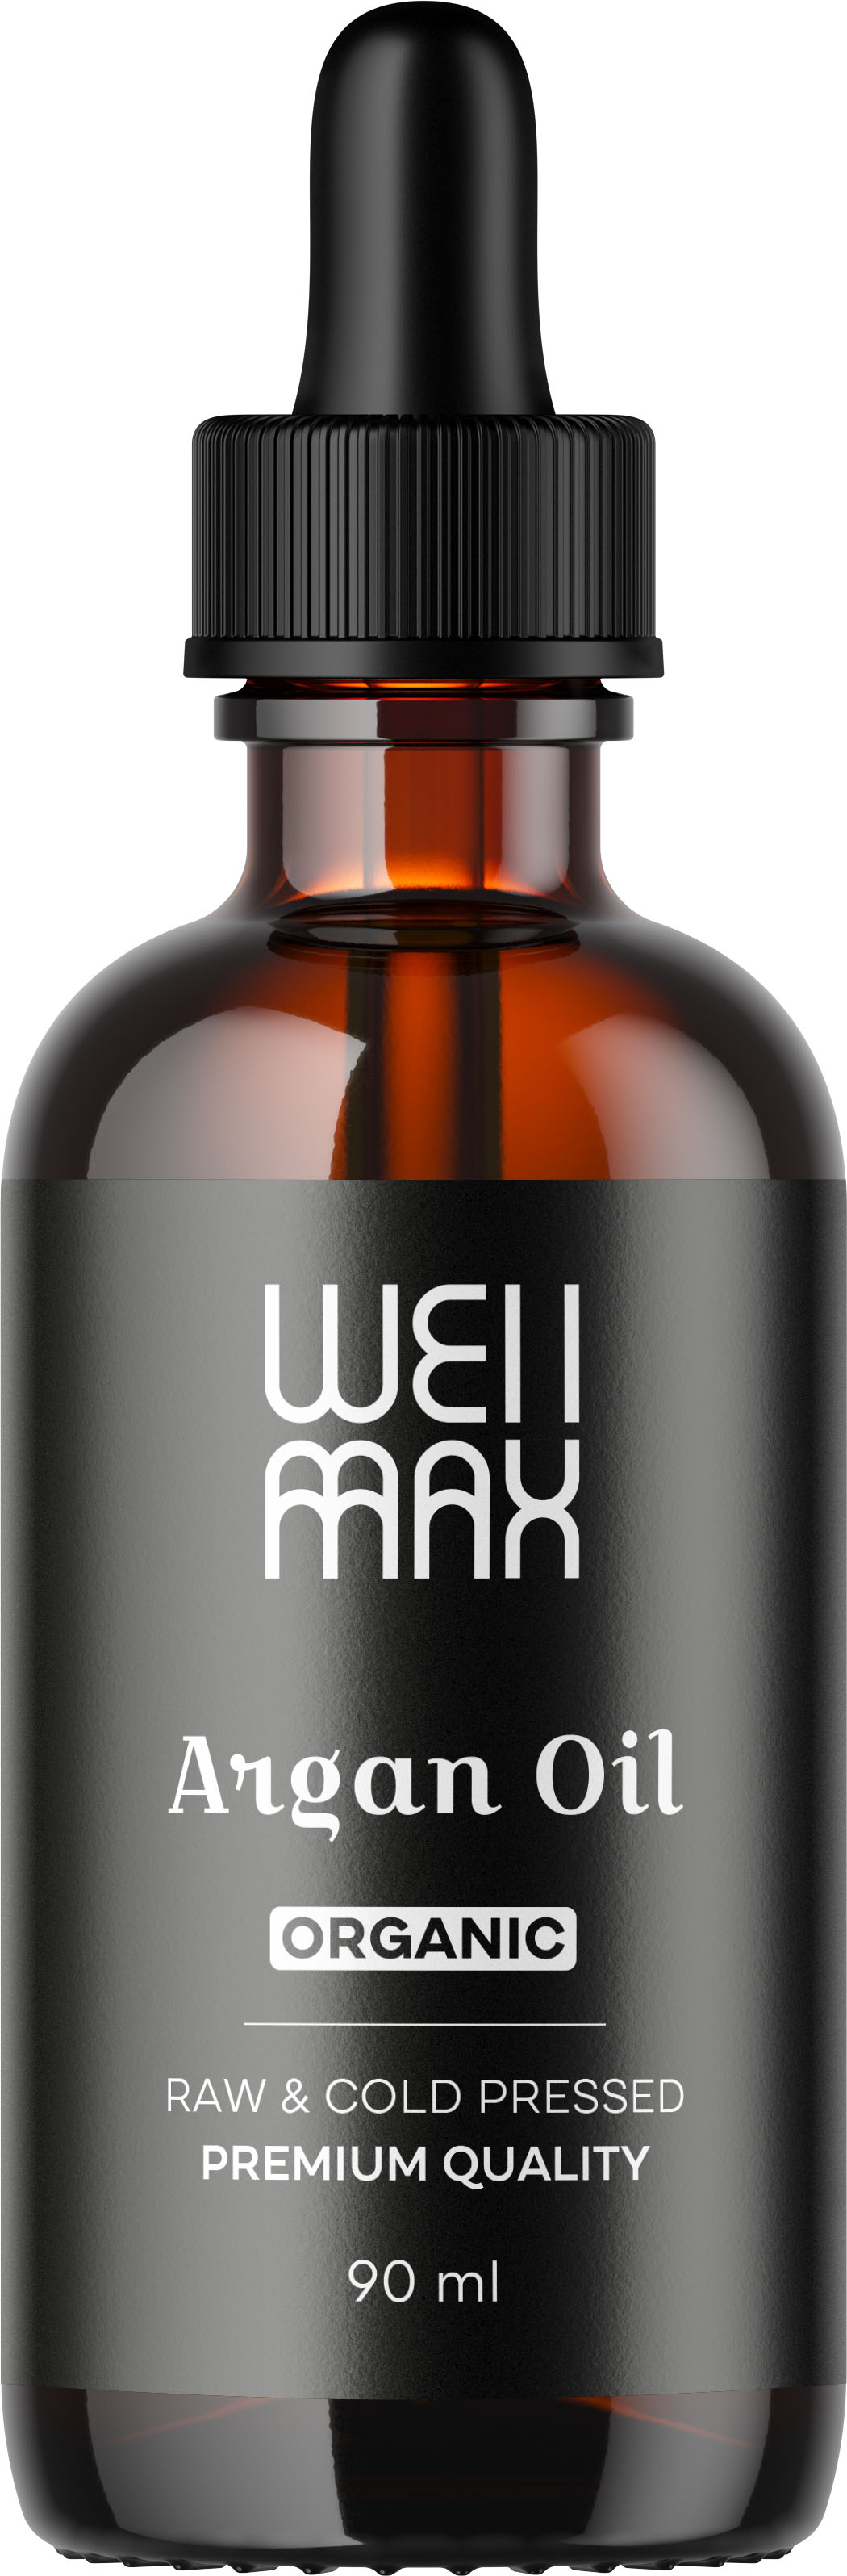 Levně WellMax Arganový olej, BIO, RAW, 90 ml Olej z arganových jader pro hydrataci a výživu pokožky / *CZ-BIO-001 certifikát